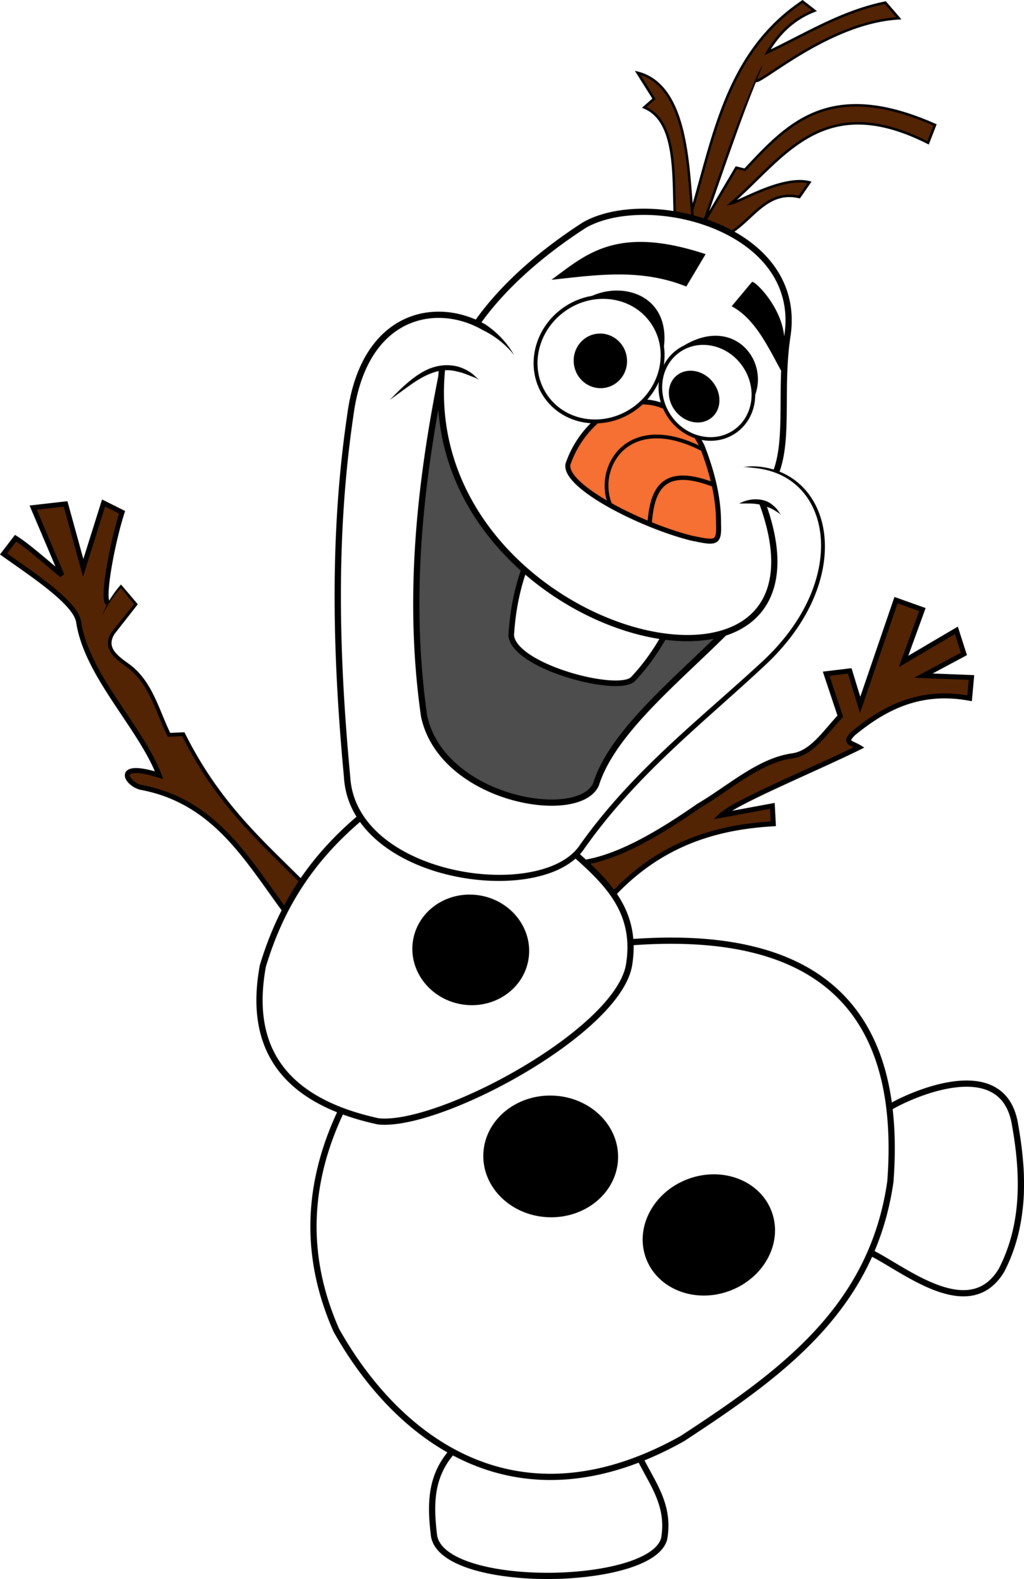 Snowman clipart january. Olaf by shadow unicorn